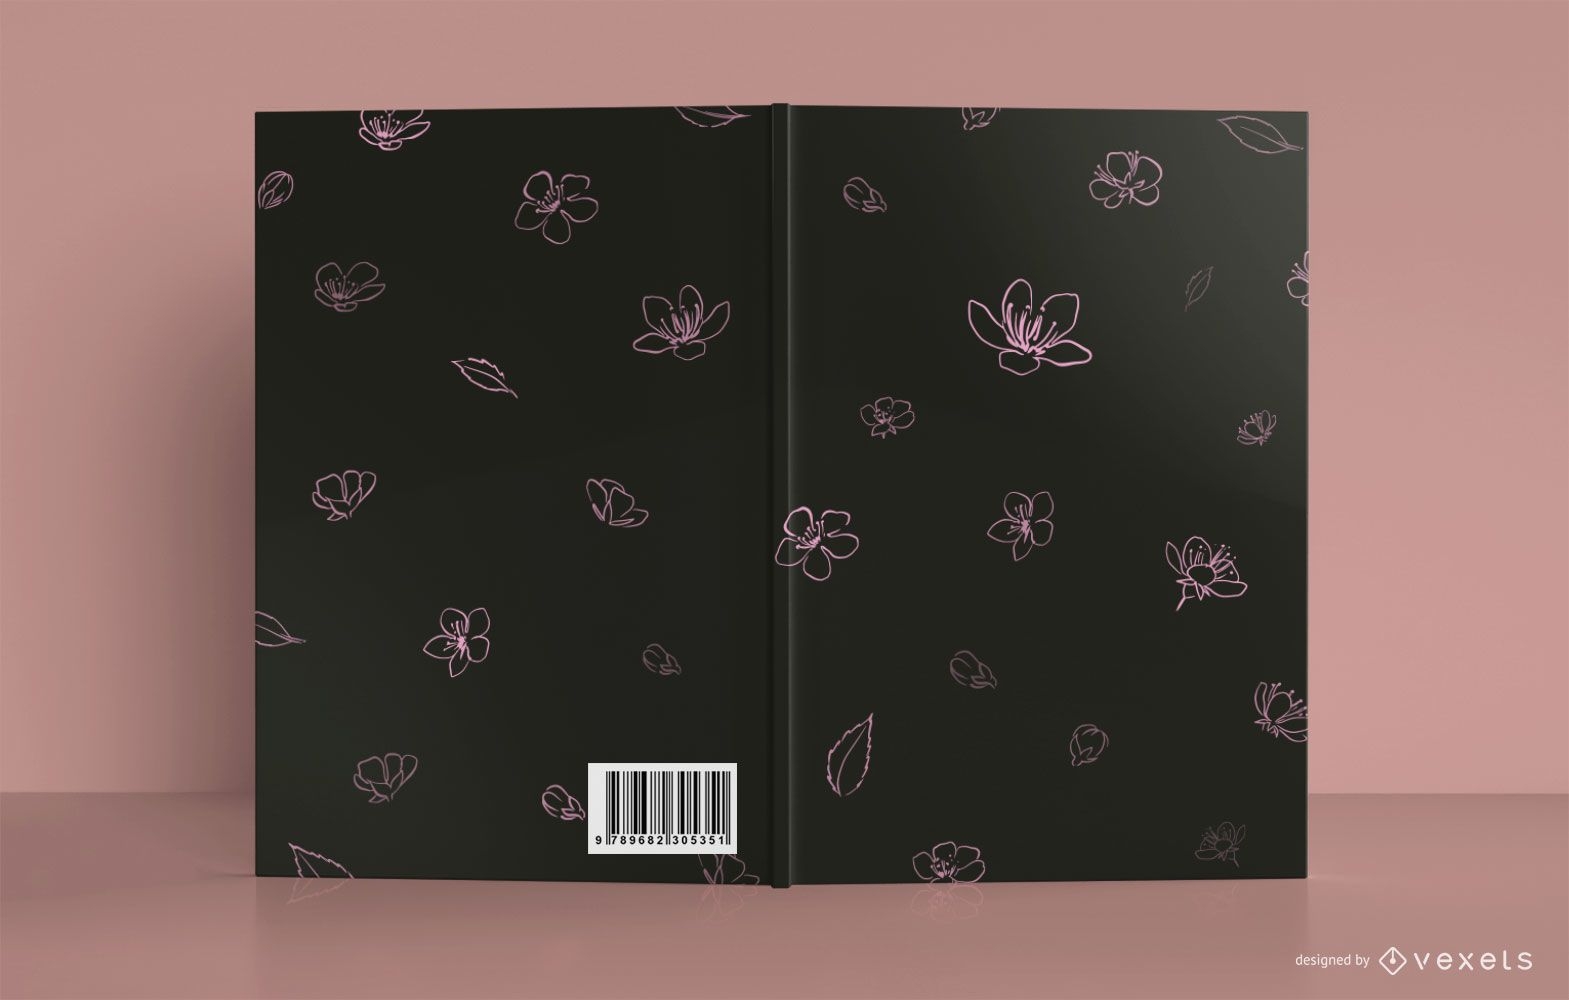 Design floral da capa do livro de medita??o